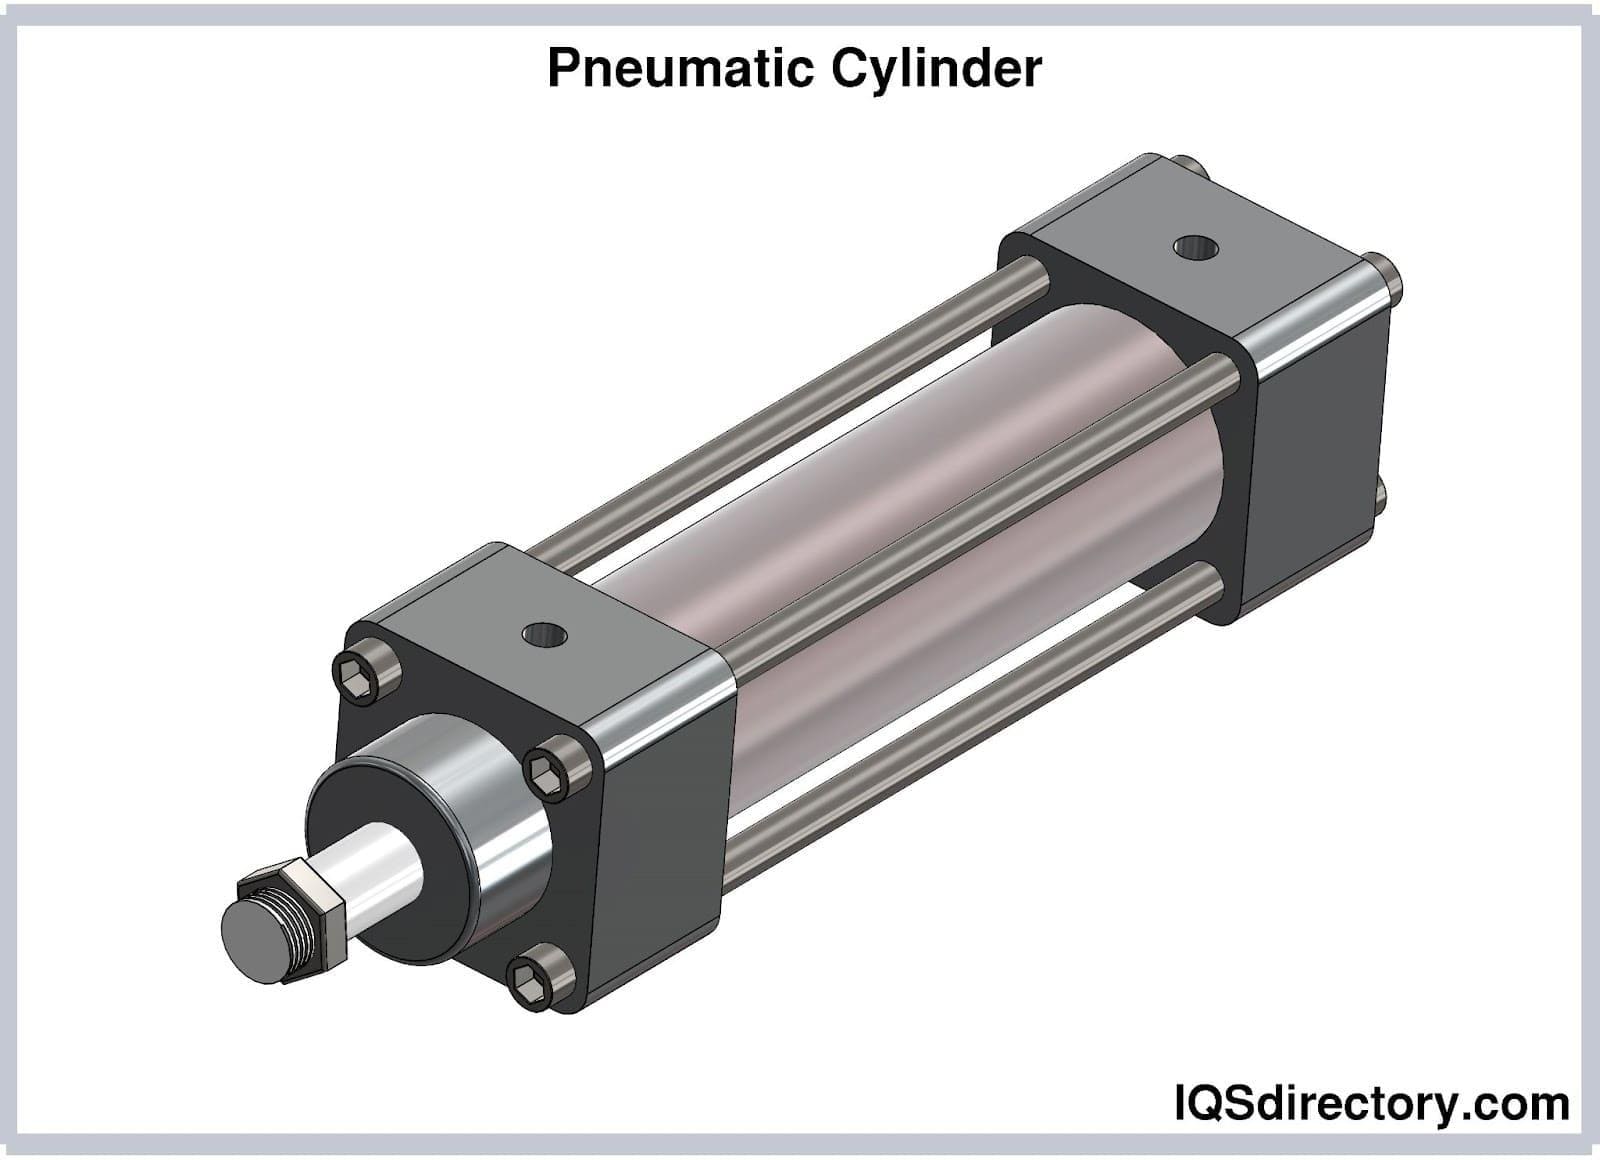 A Pneumatic Air Cylinder